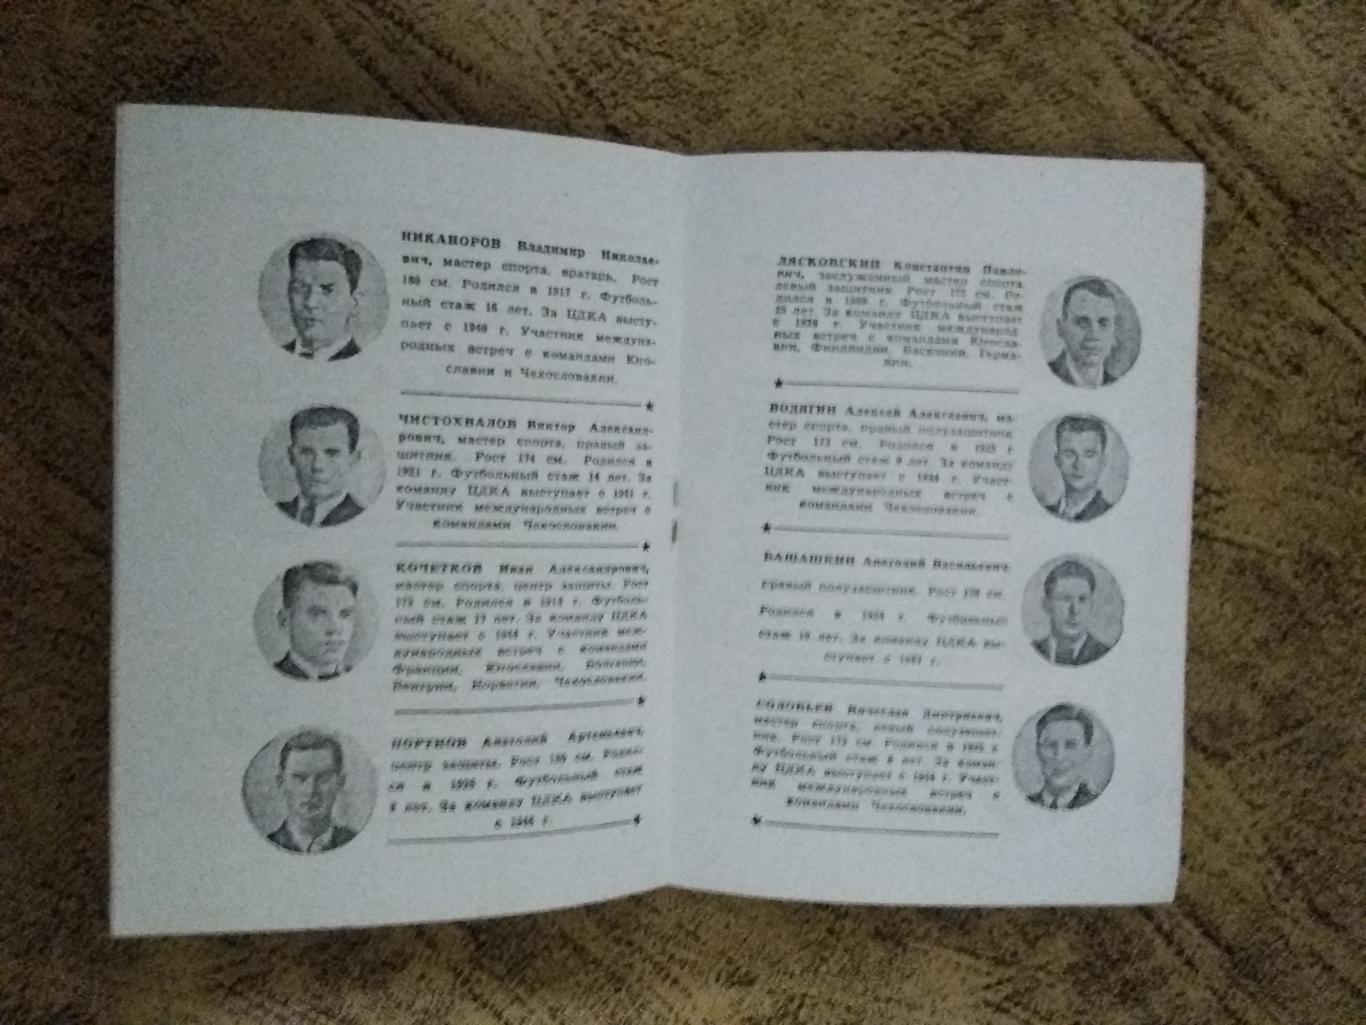 ЦДКА (Москва). Московский большевик 1948 г. (копия). 1